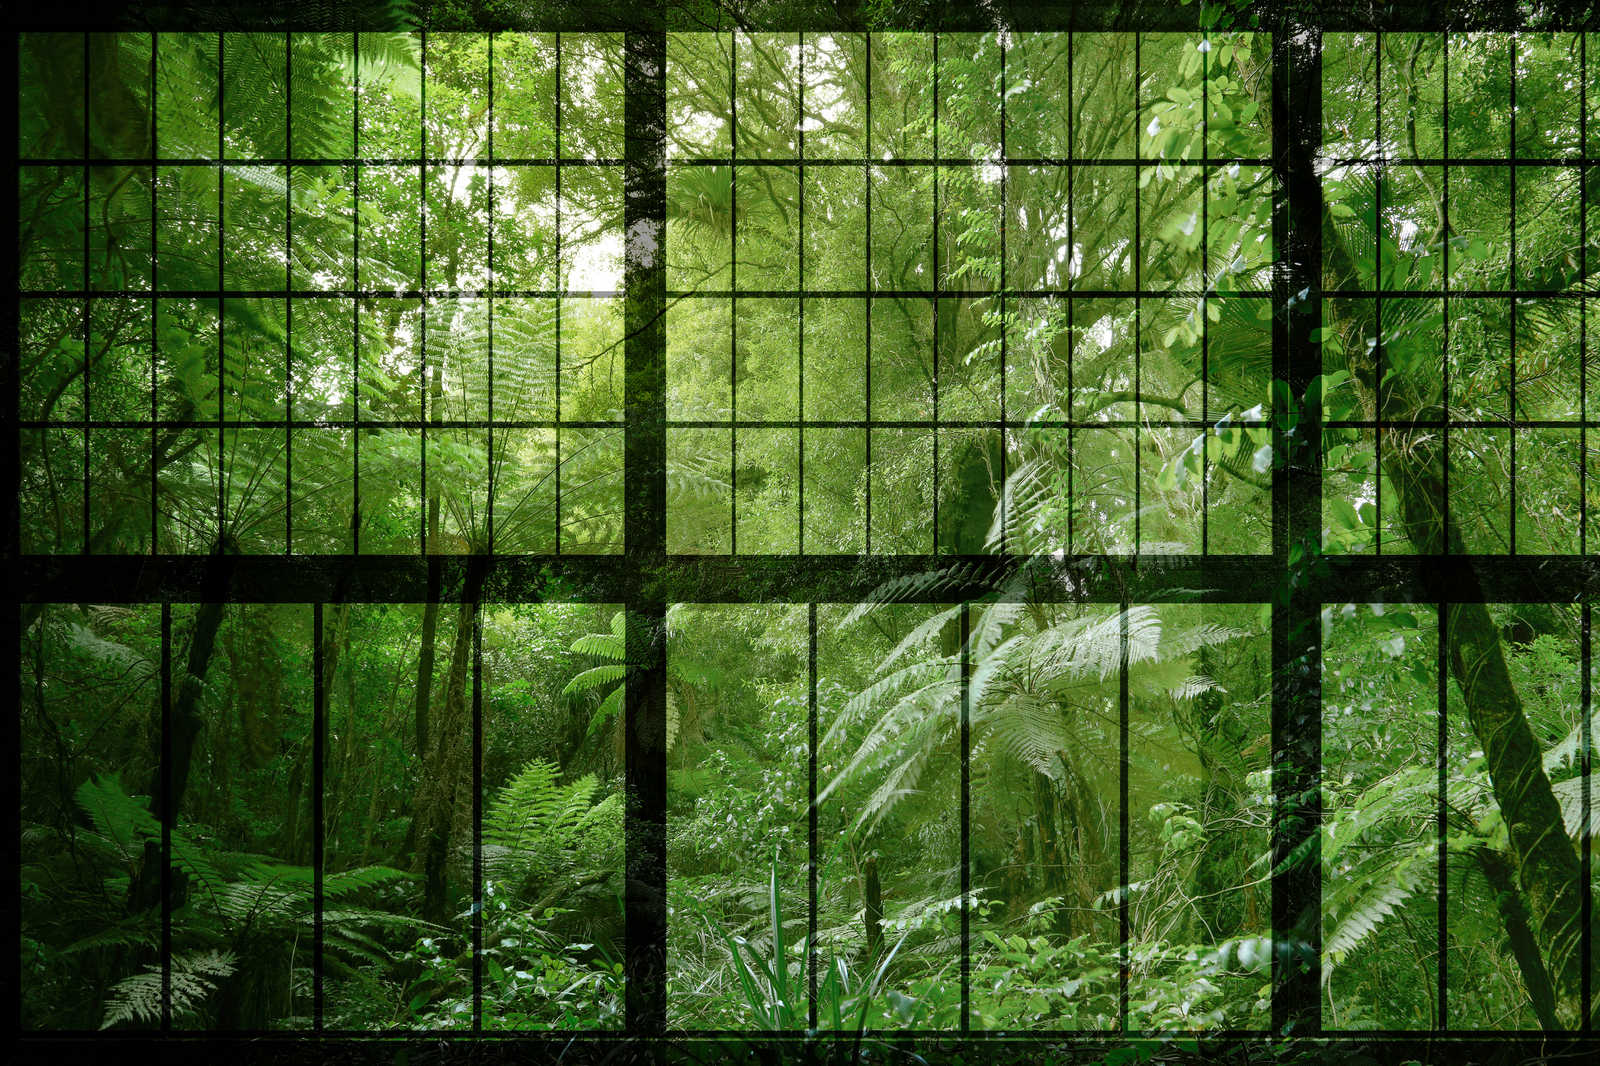             Rainforest 2 - Loft fenêtre toile avec vue sur la jungle - 0,90 m x 0,60 m
        